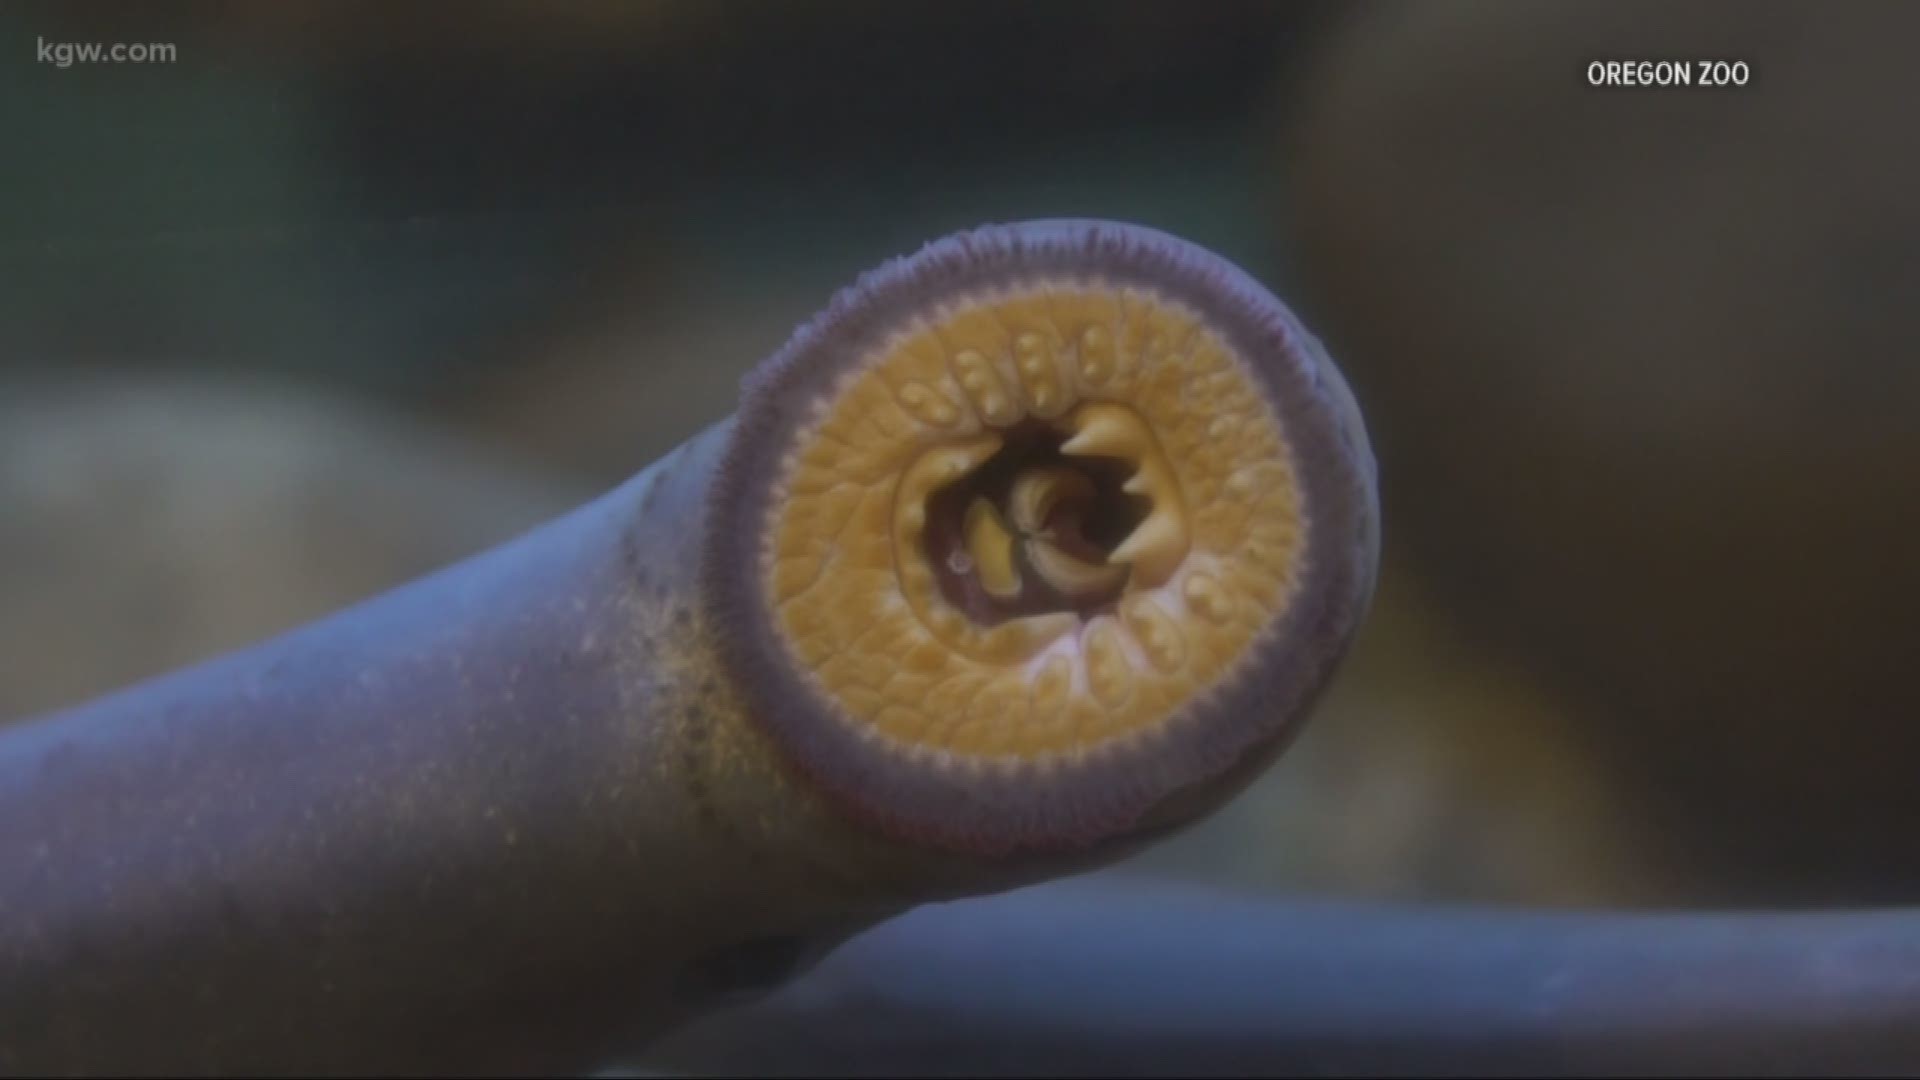 Oregon Zoo opens lamprey eel exhibit